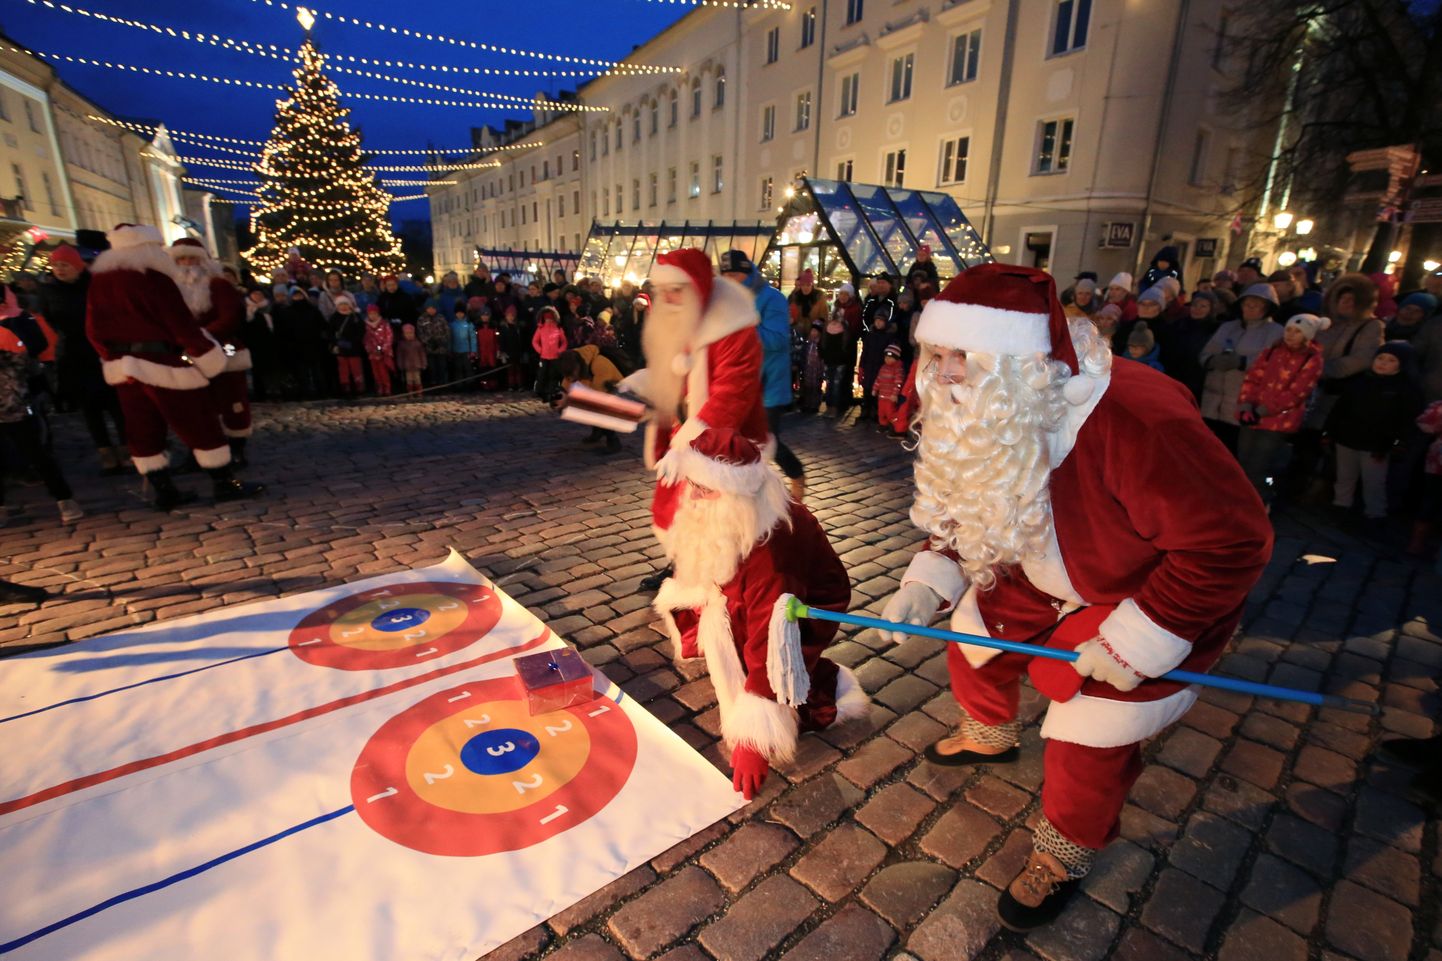 Jõuluvanade talimängud Tartu raeplatsil on juba mitu aastat kestnud traditsioon. Kõiki alasid on võimatu kirjeldada.